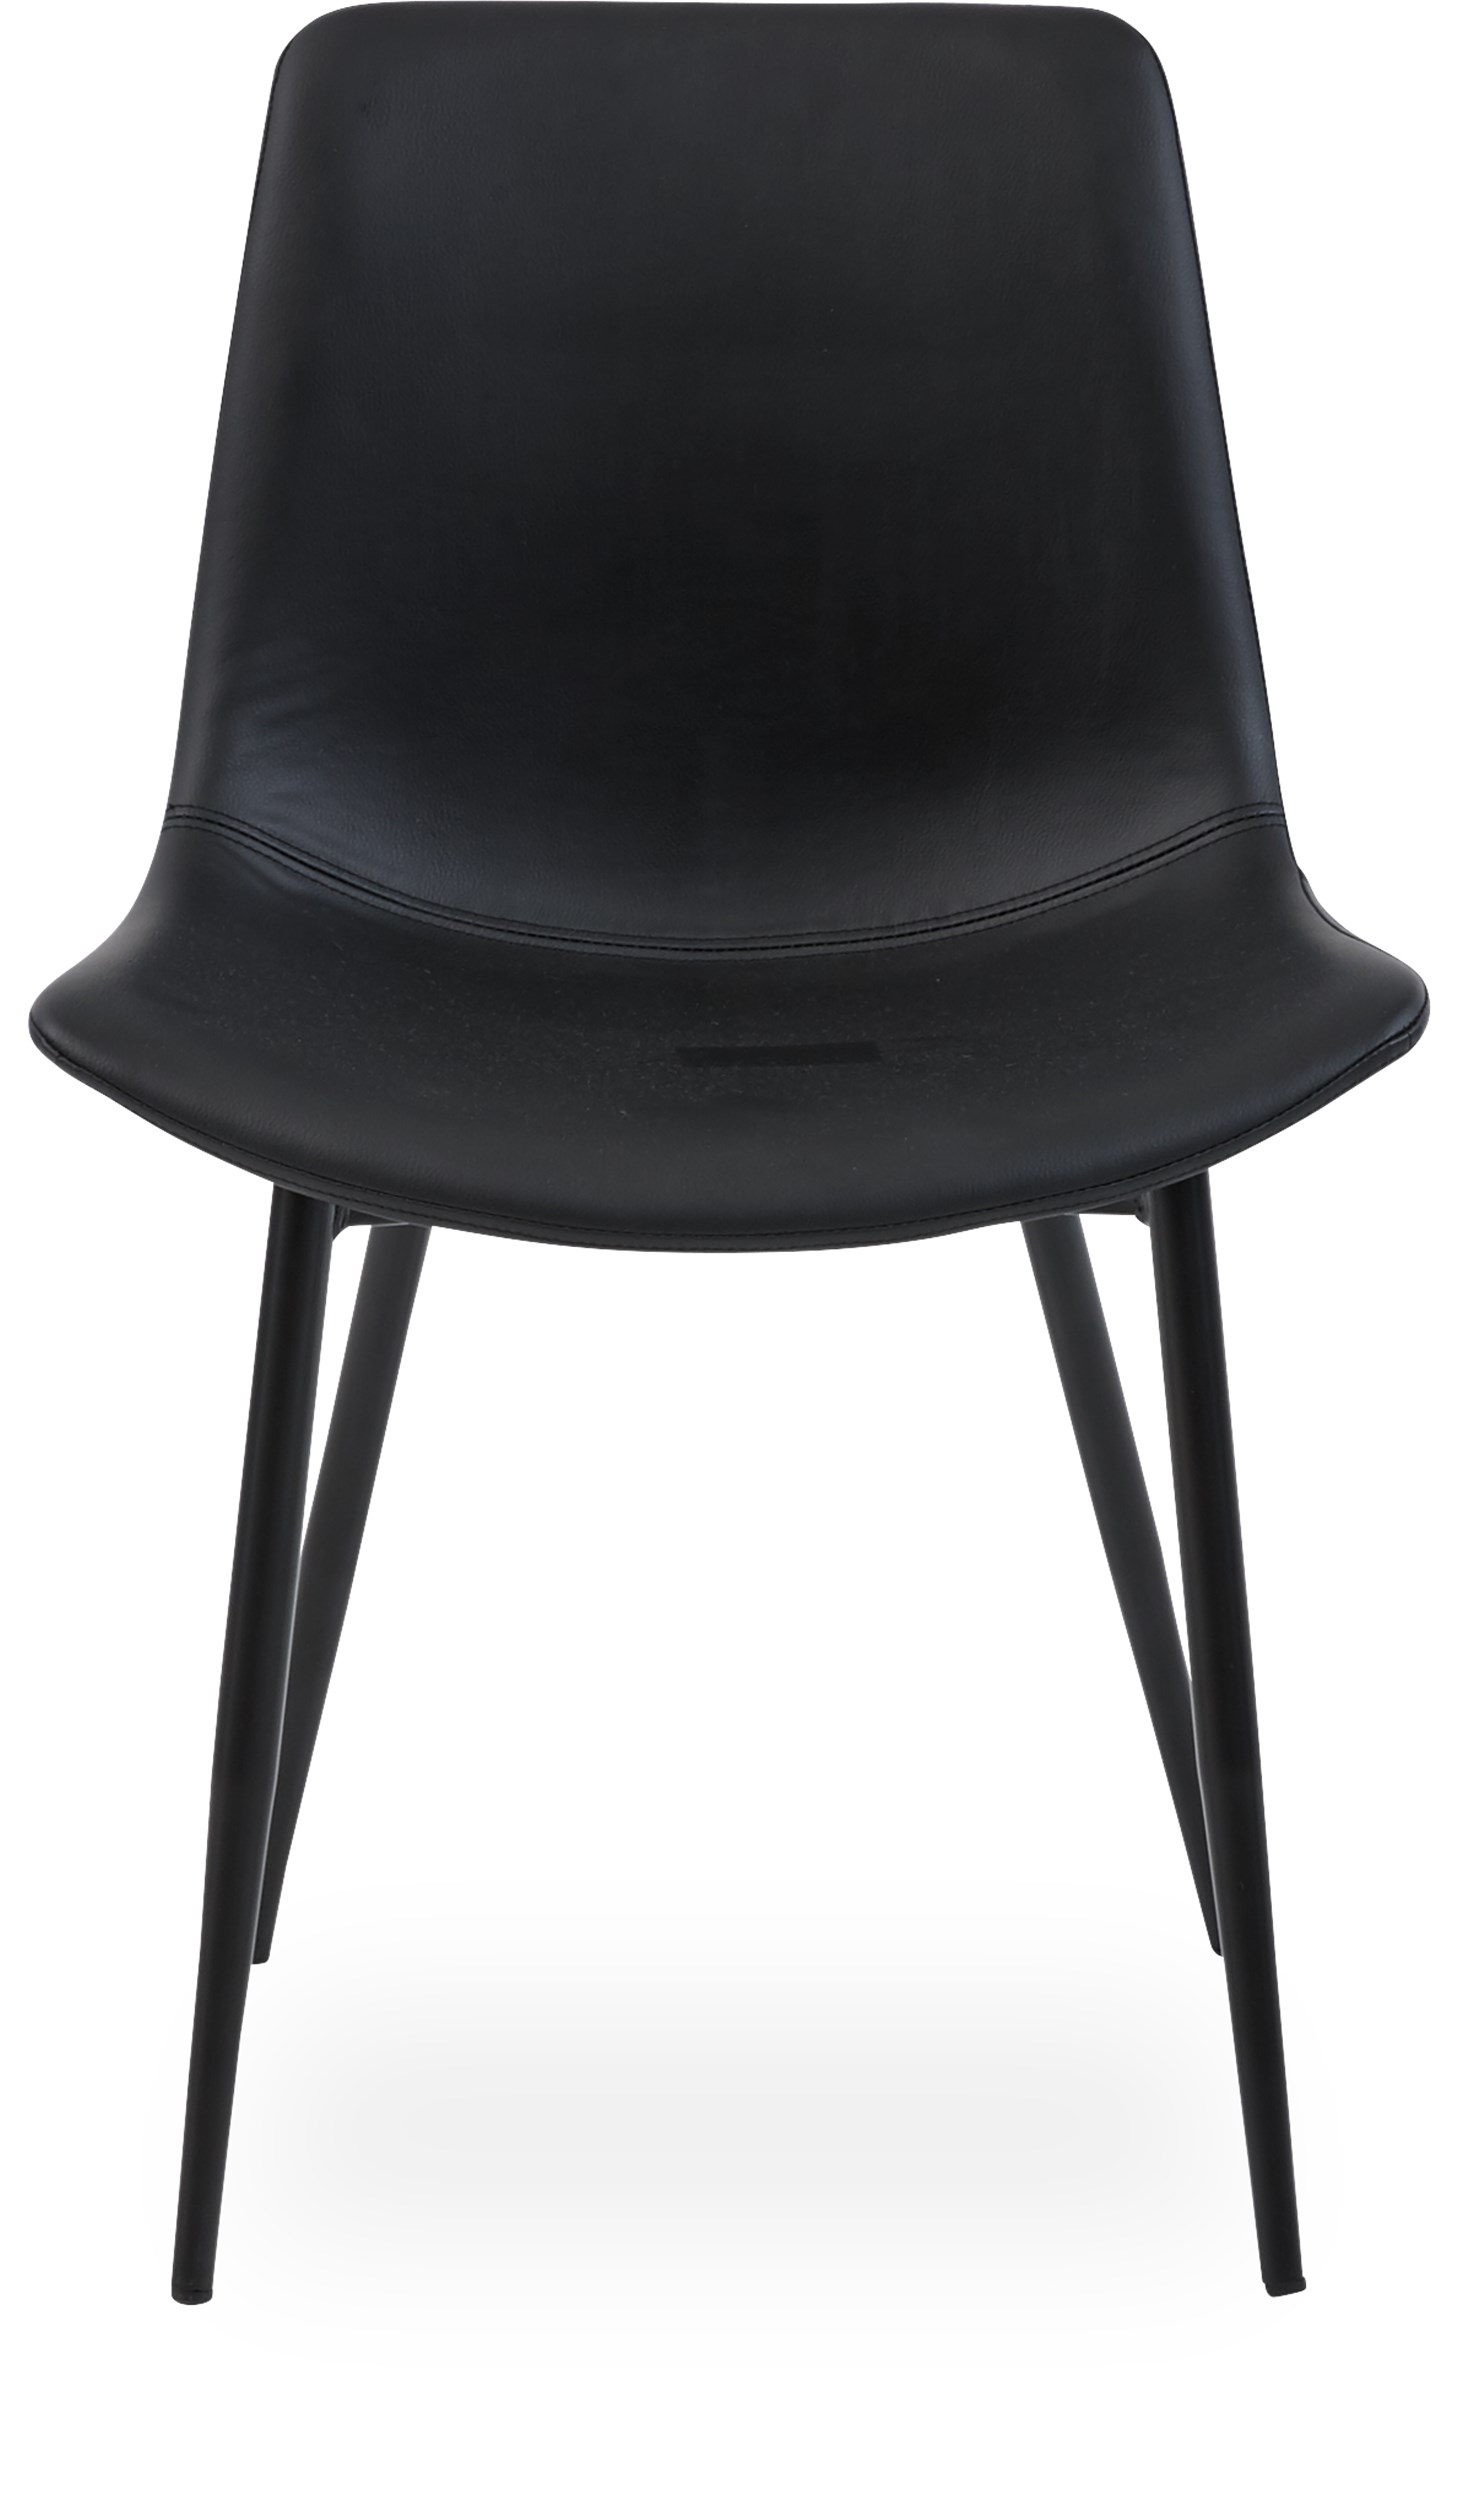 Carolina matstol - Sits i svart läder och ben i svart pulverlackerat stål